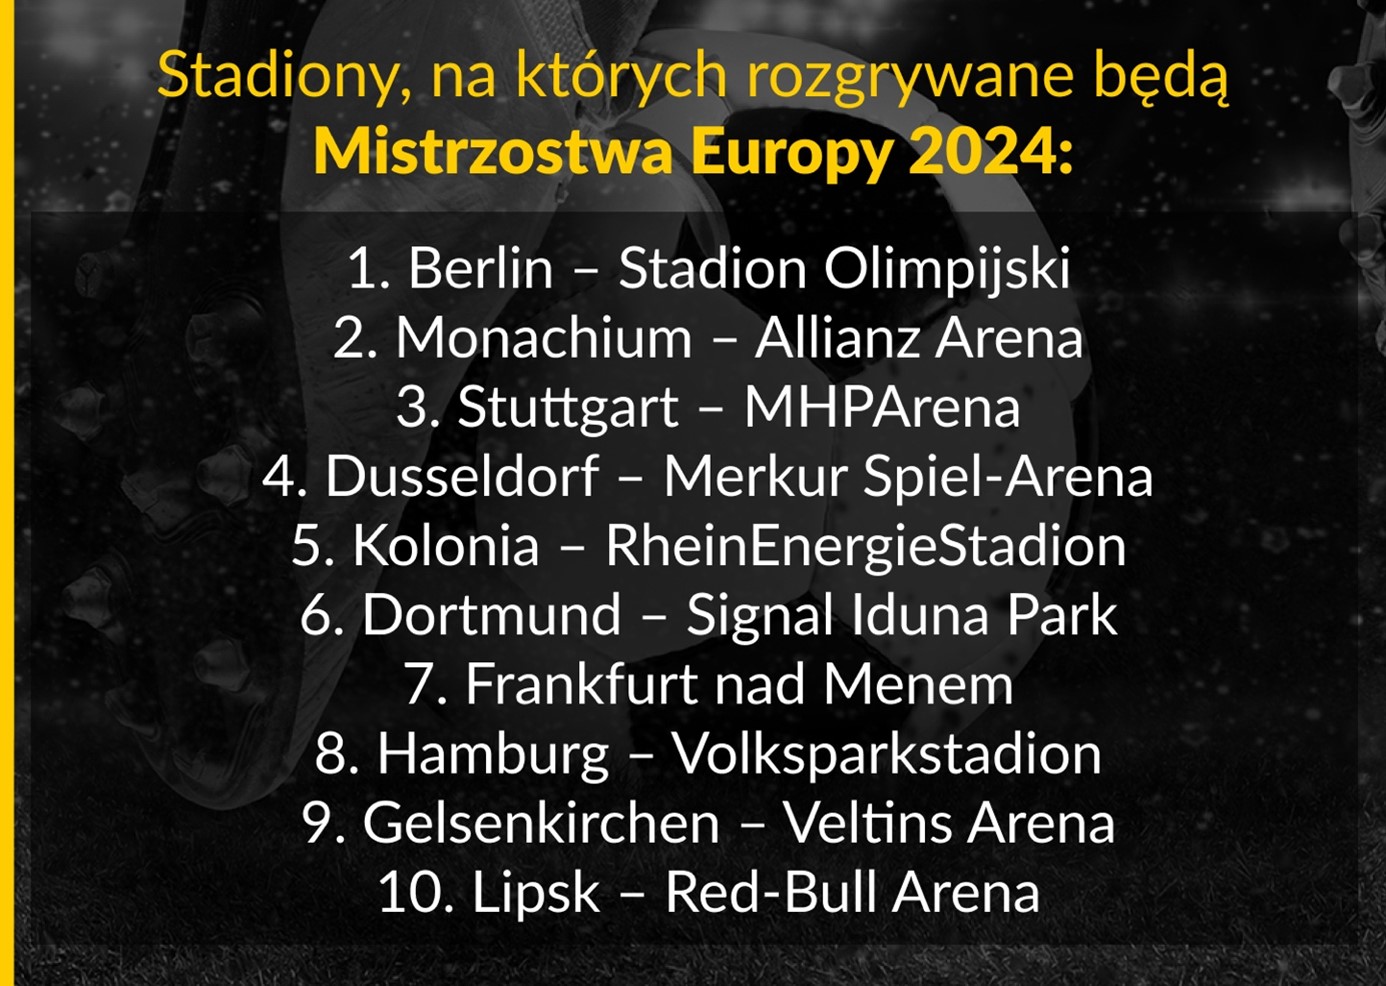 Stadiony Mistrzostwa Europy w 2024